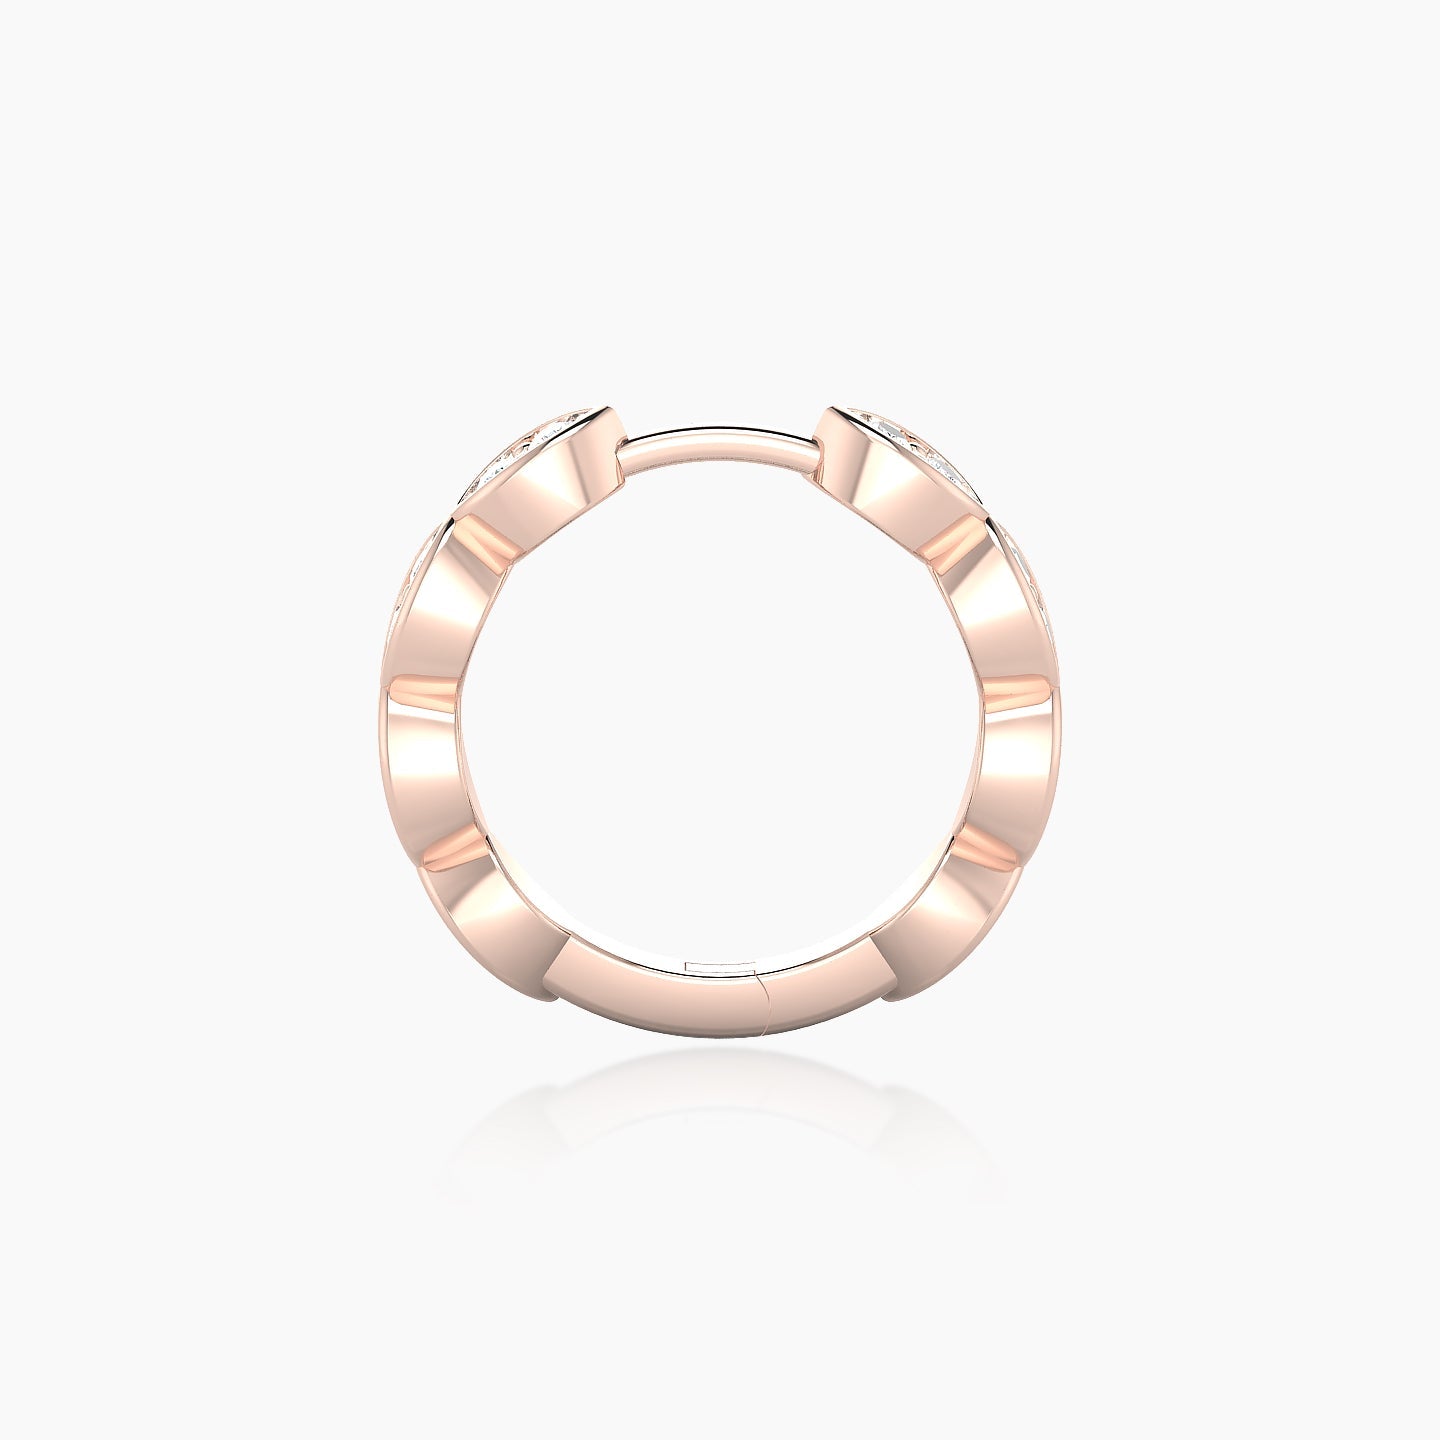 Hathor | 18k Rose Gold 9.5 mm Diamond Nose Ring Piercing